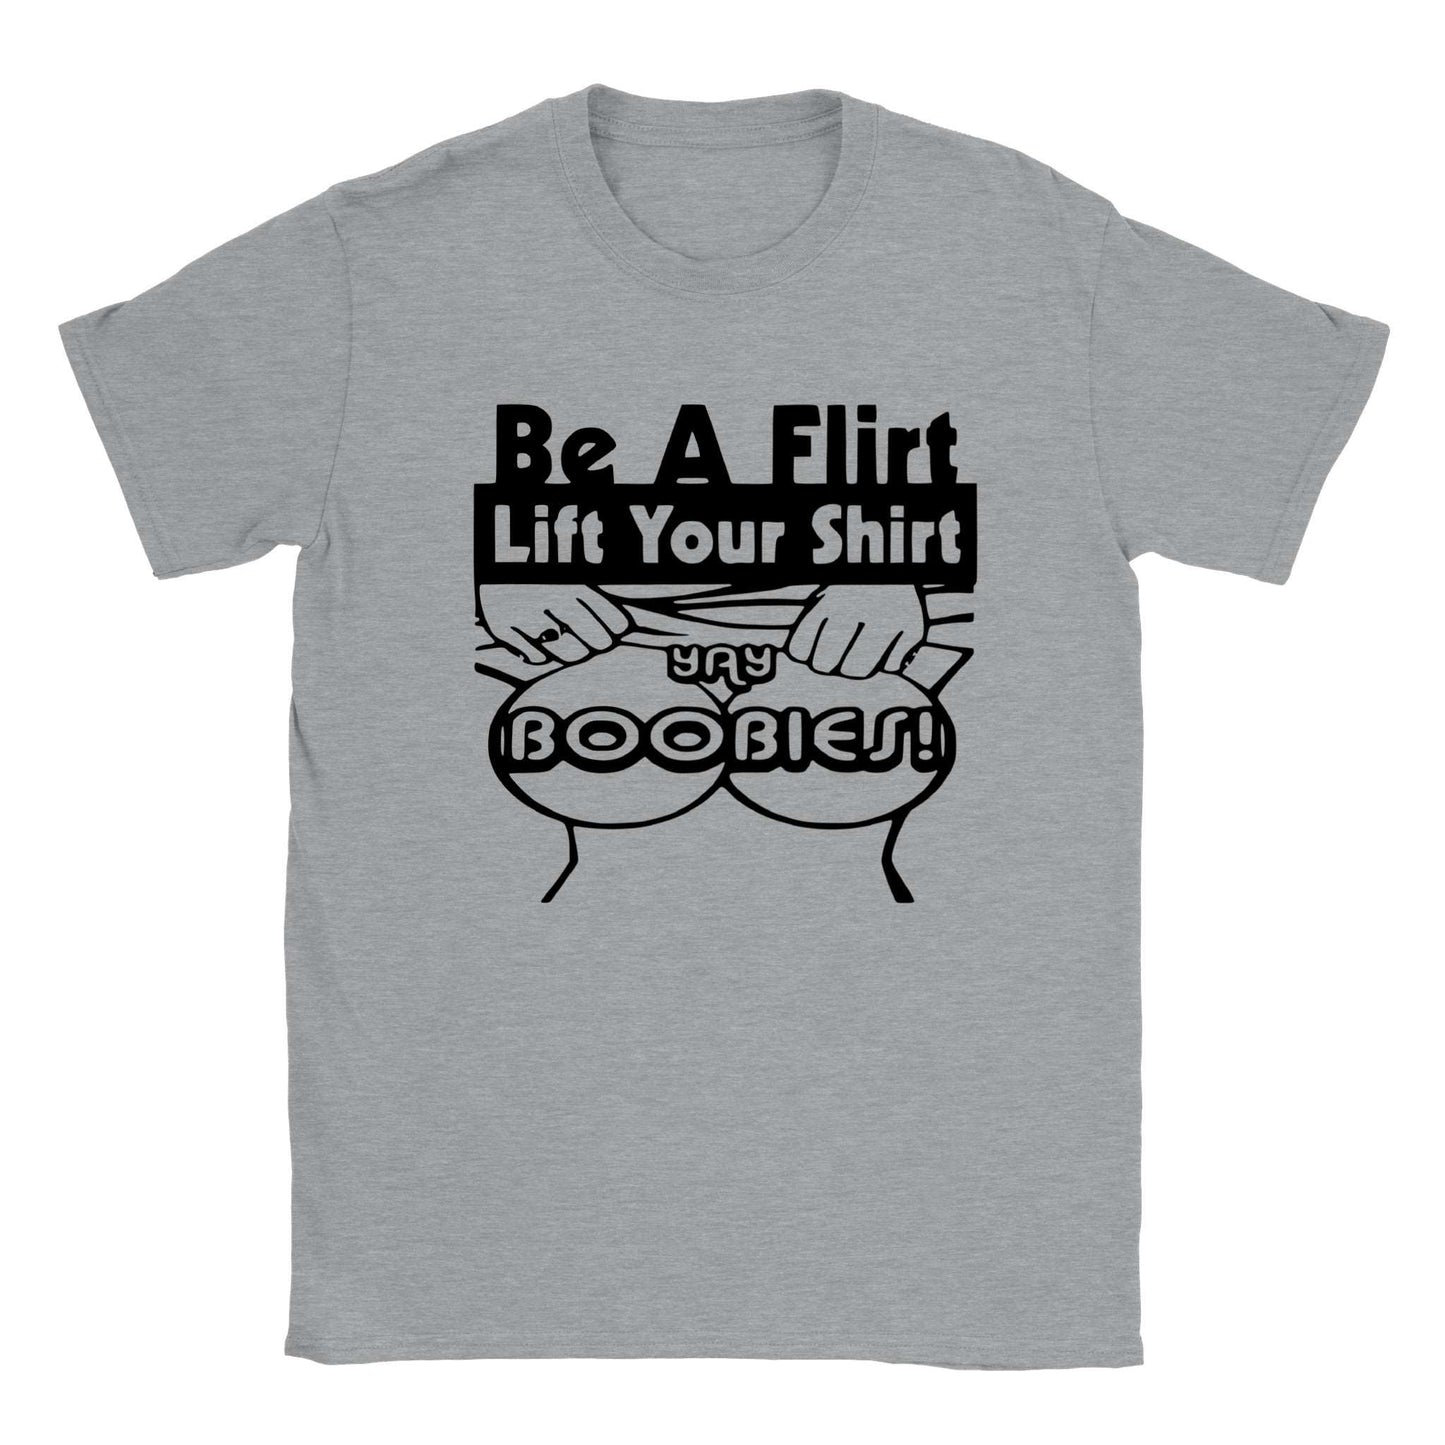 Be A Flirt, Lift Your Shirt - Classic Unisex Crewneck T-shirt - Mister Snarky's